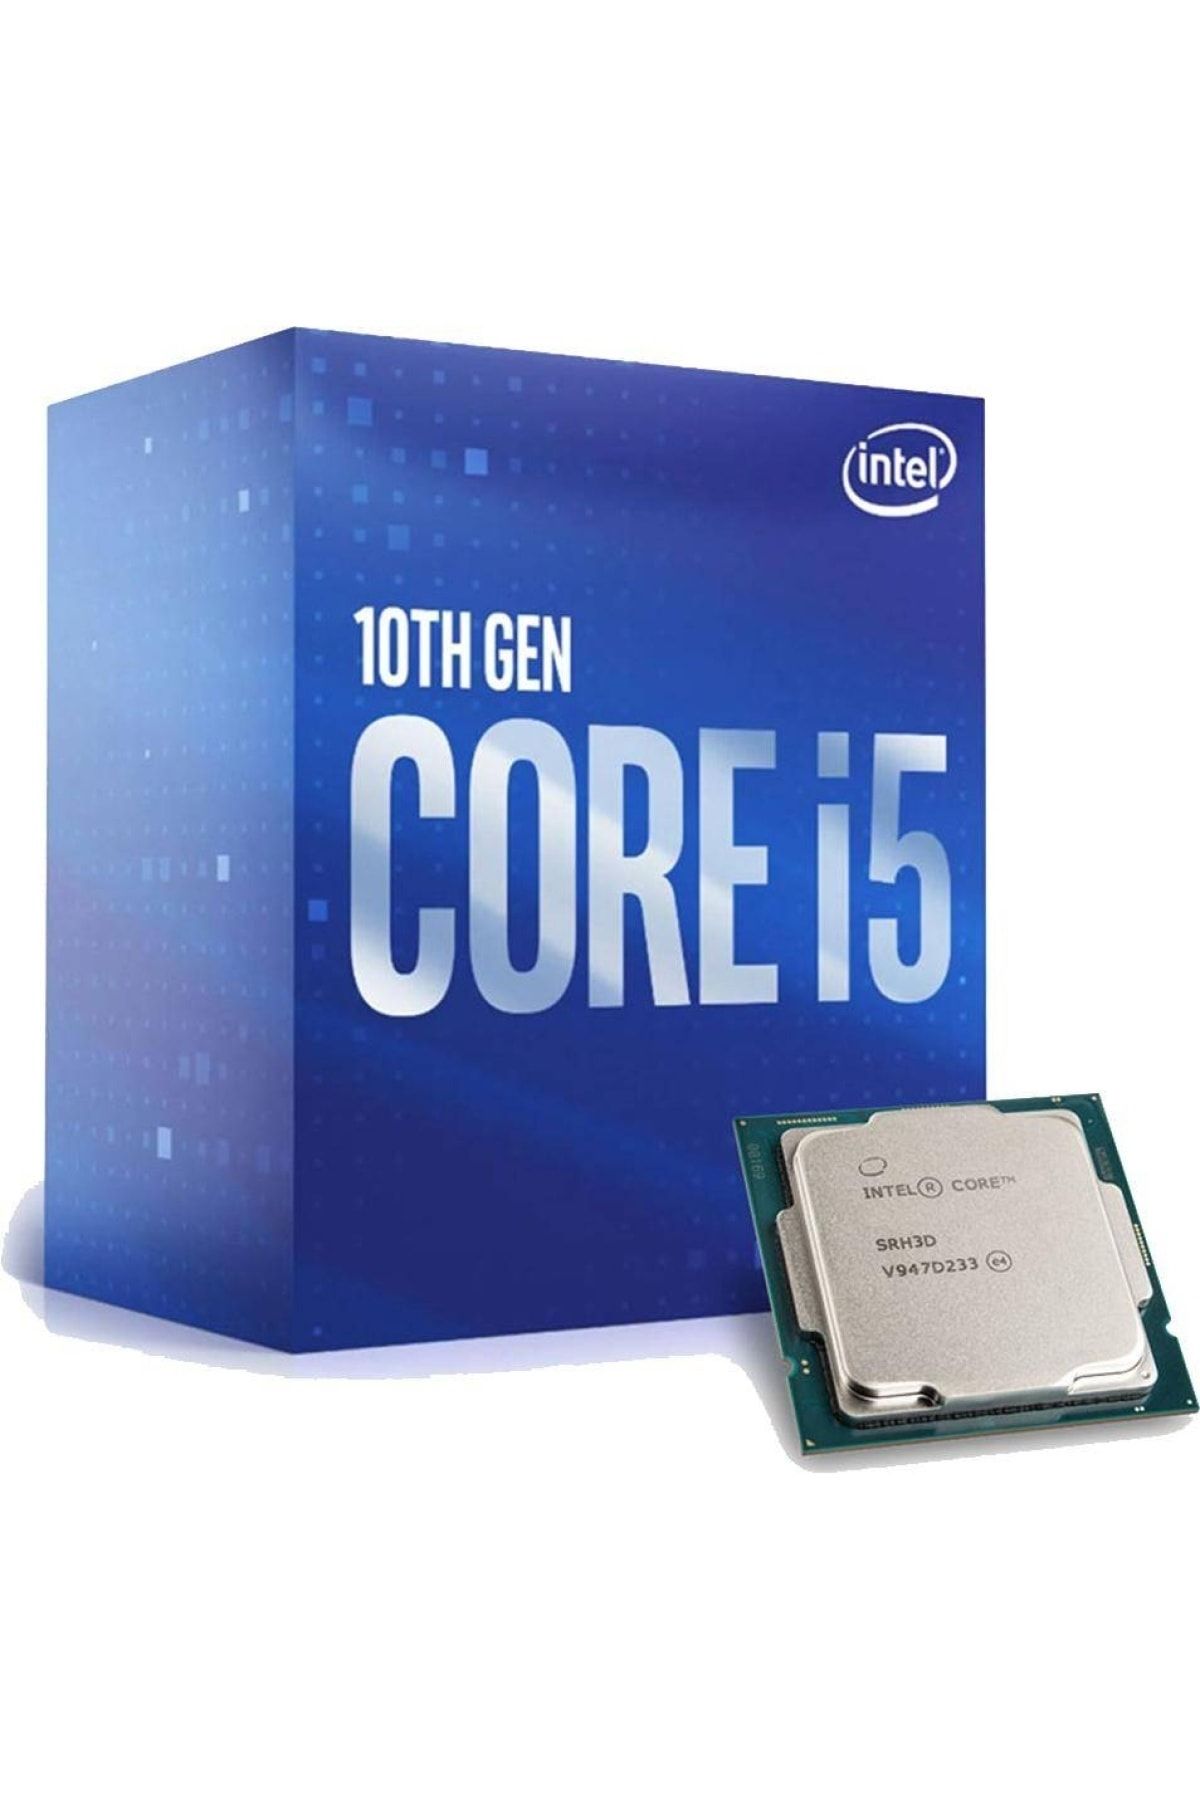 Intel core i5 10400f 2.9